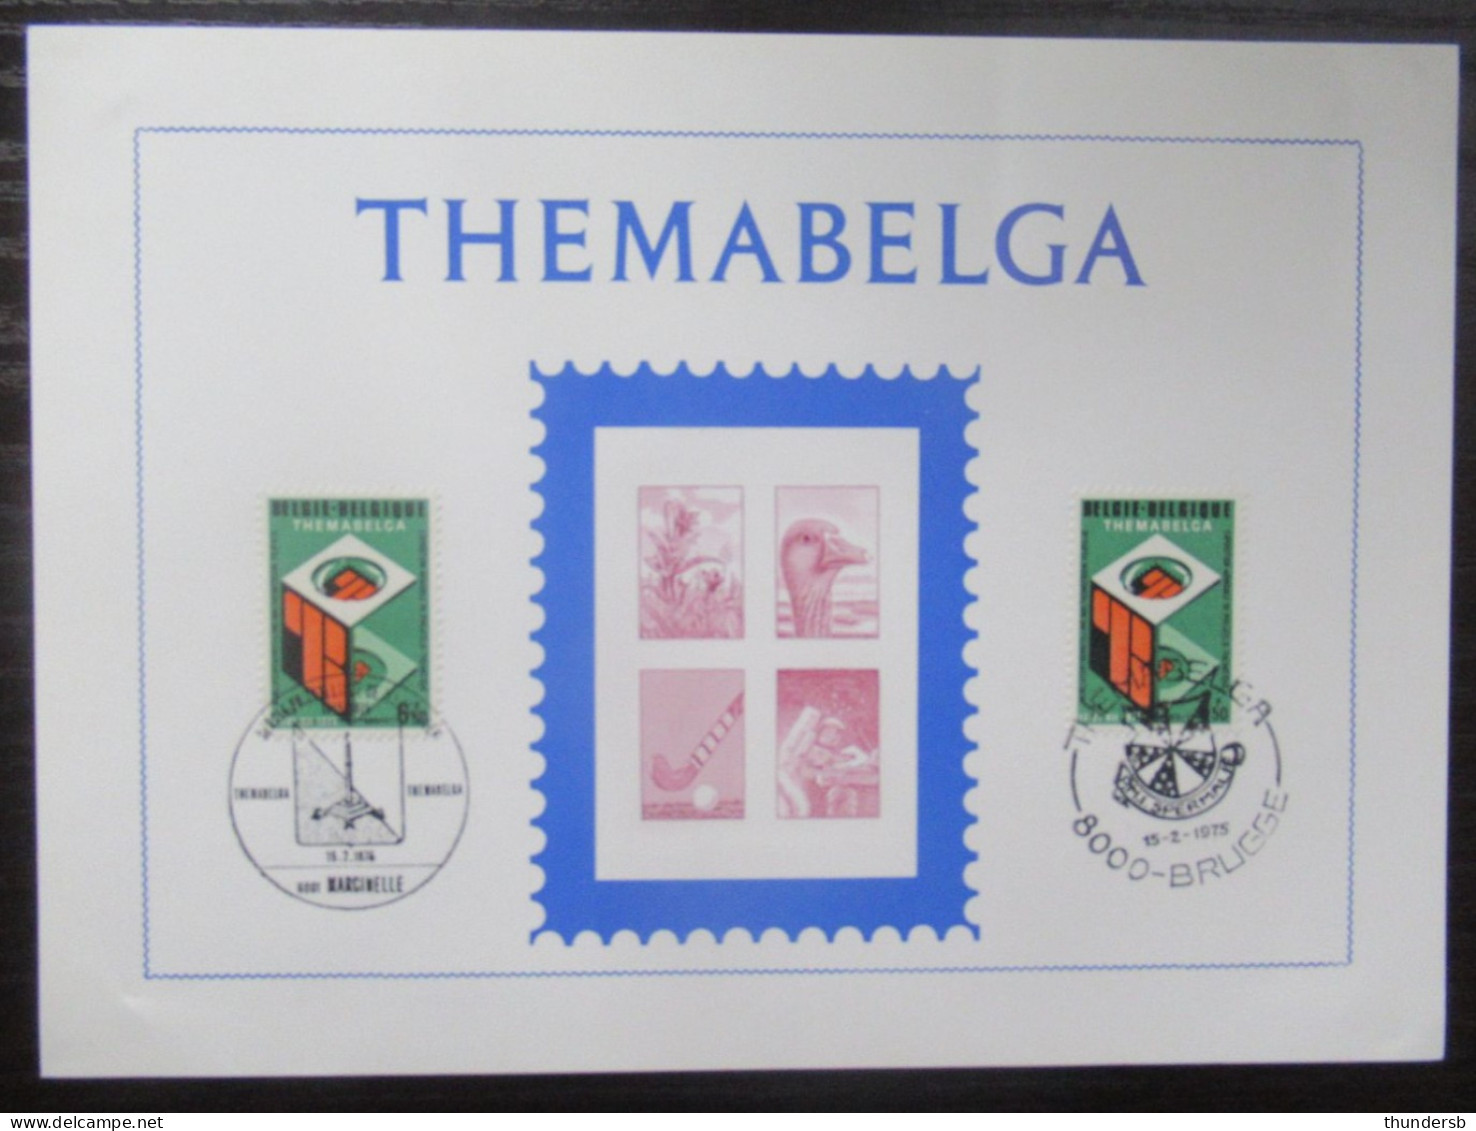 1746 'Themabelga' - Commemorative Documents